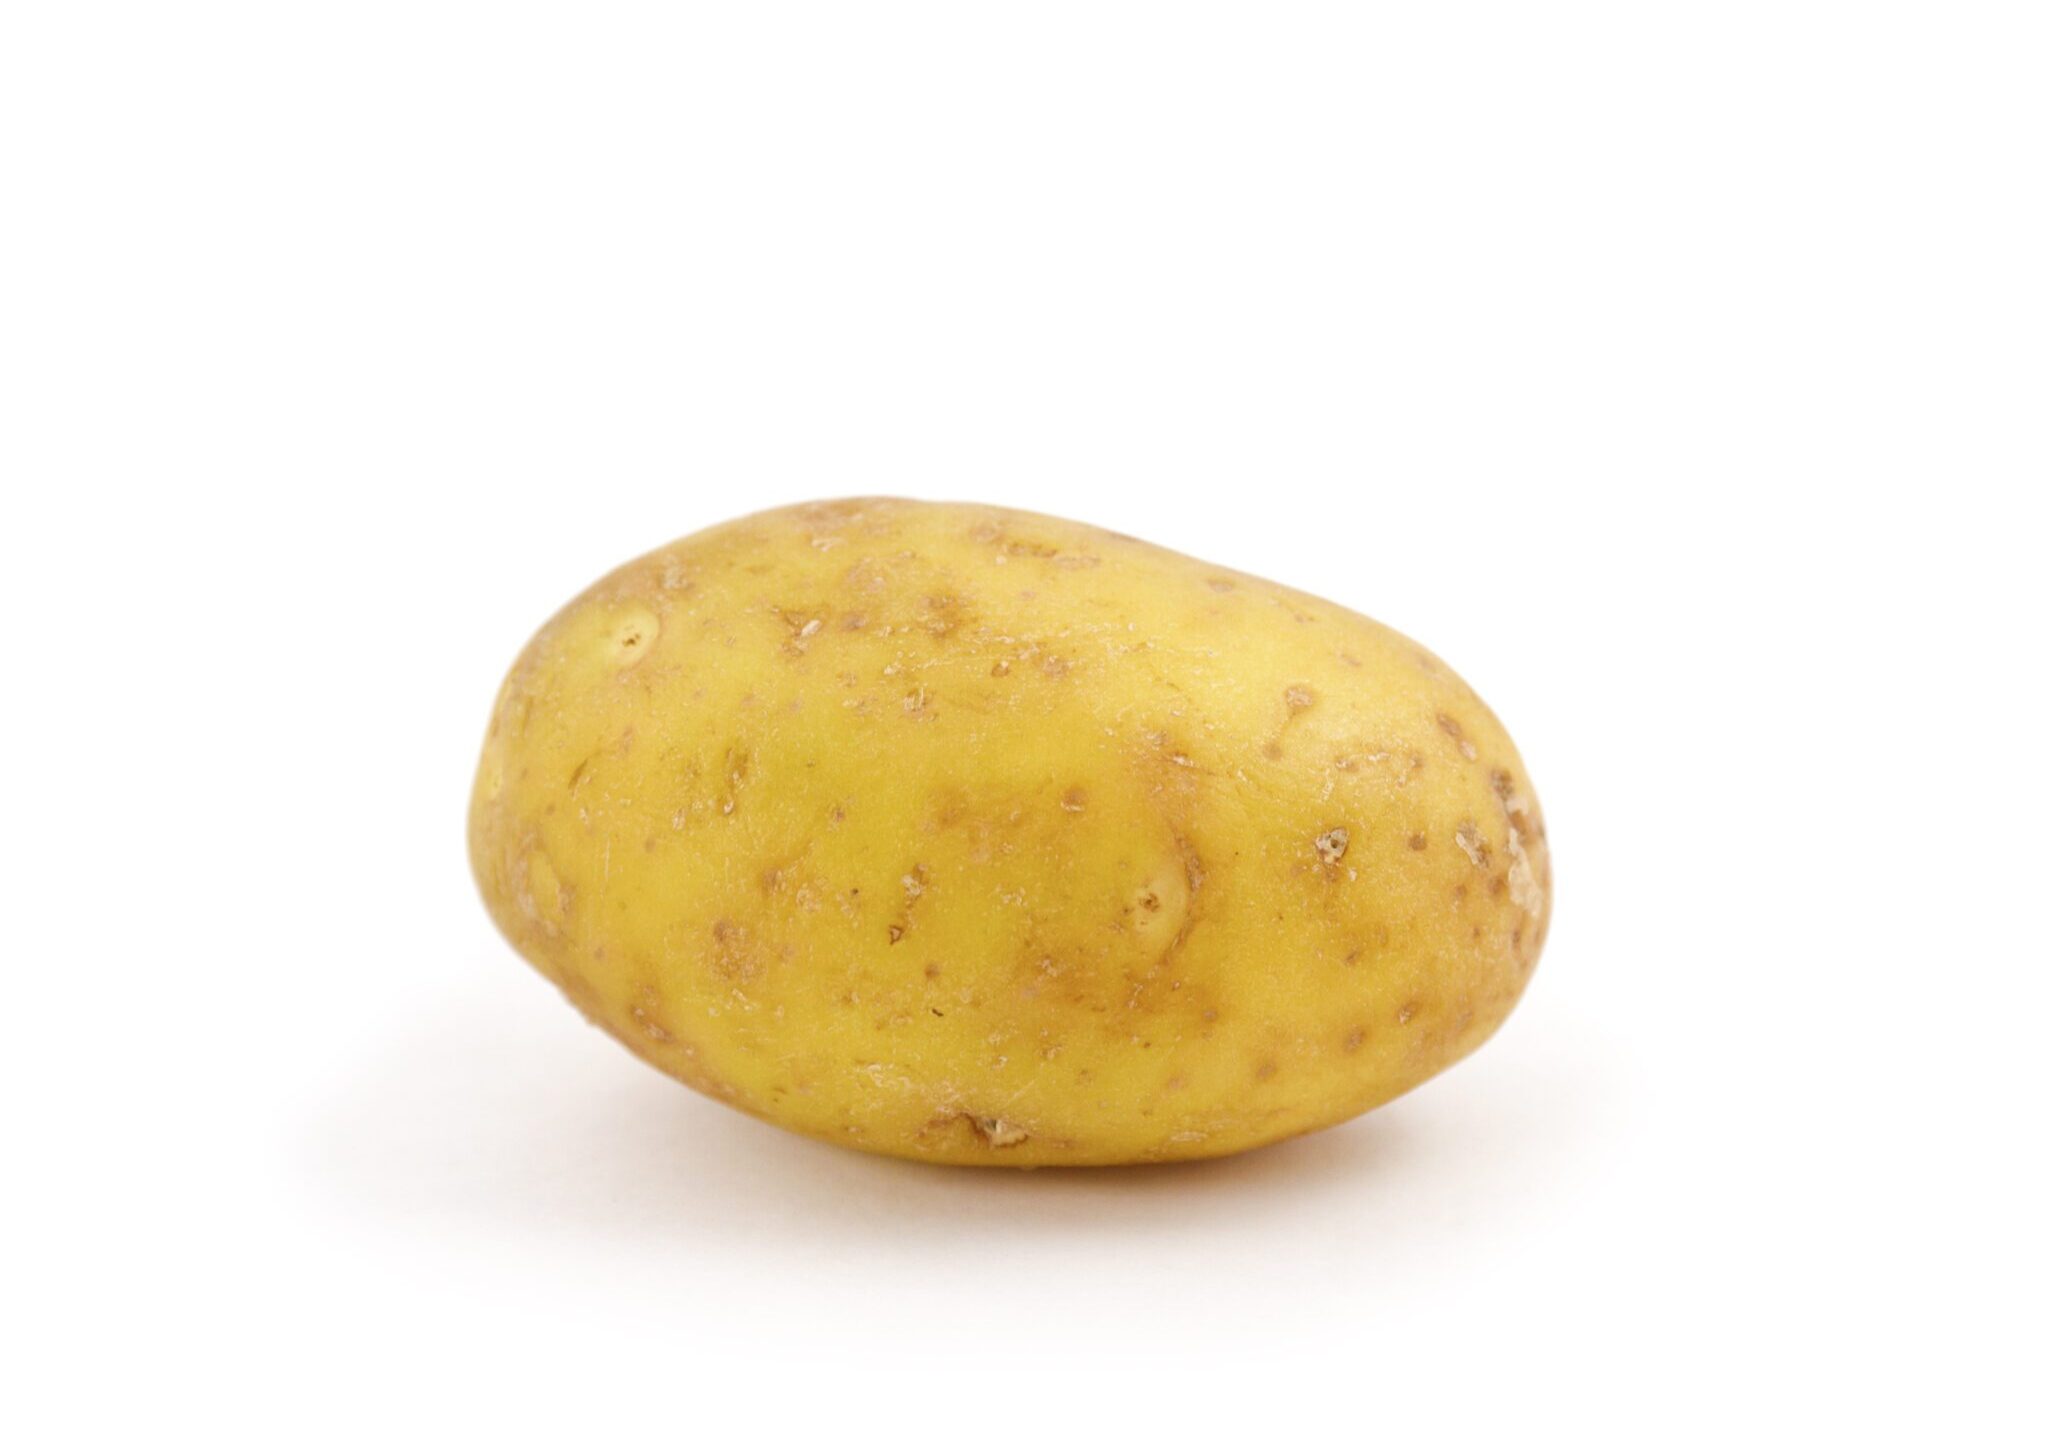 Potato on white background.